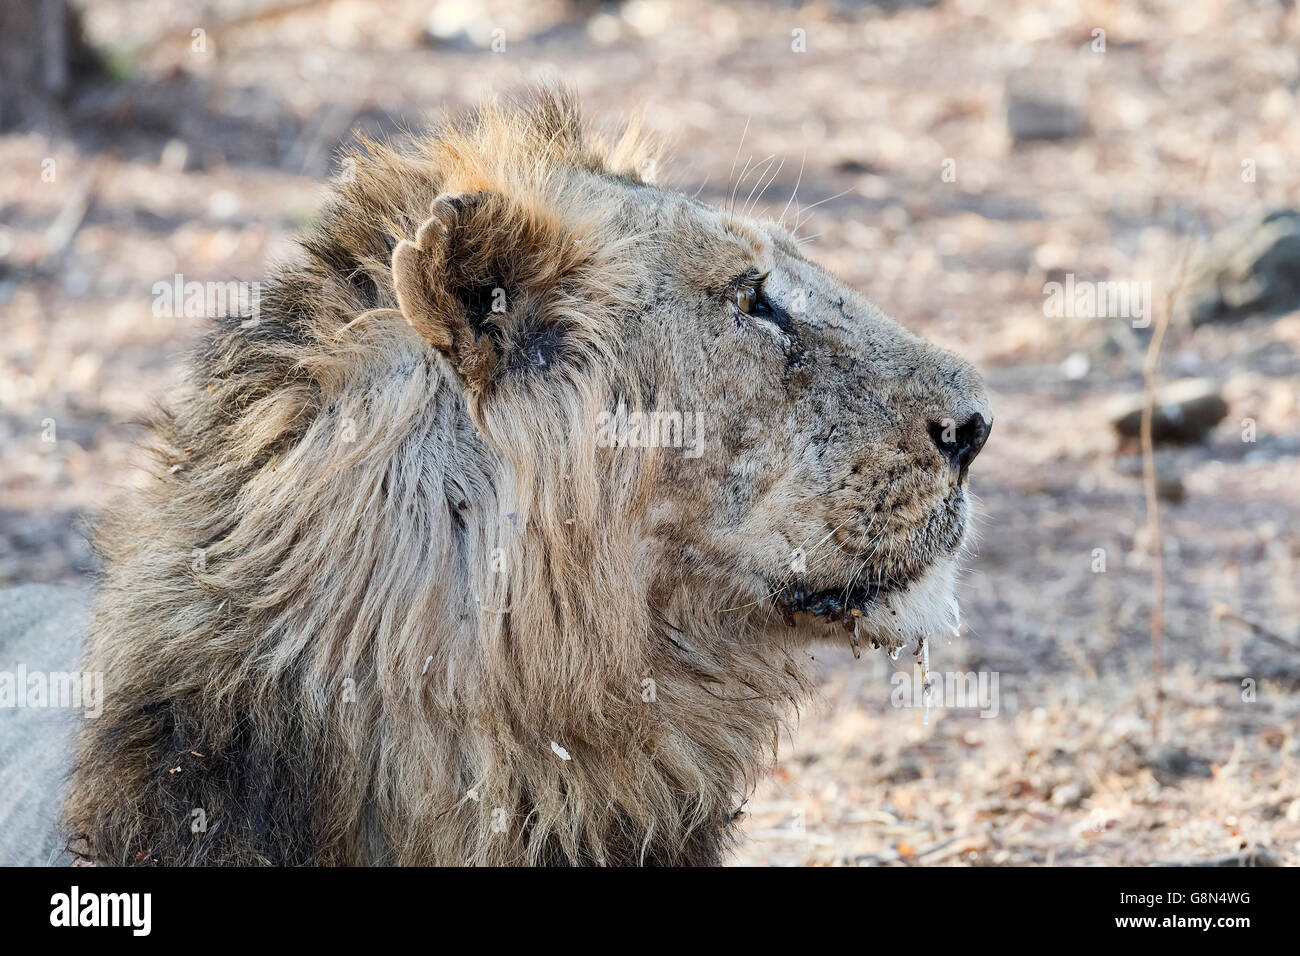 Lion d'Asie (Panthera leo persica) dans les forêts sèches, les forêts du Parc National de Gir, dans le Gujarat, Inde Banque D'Images